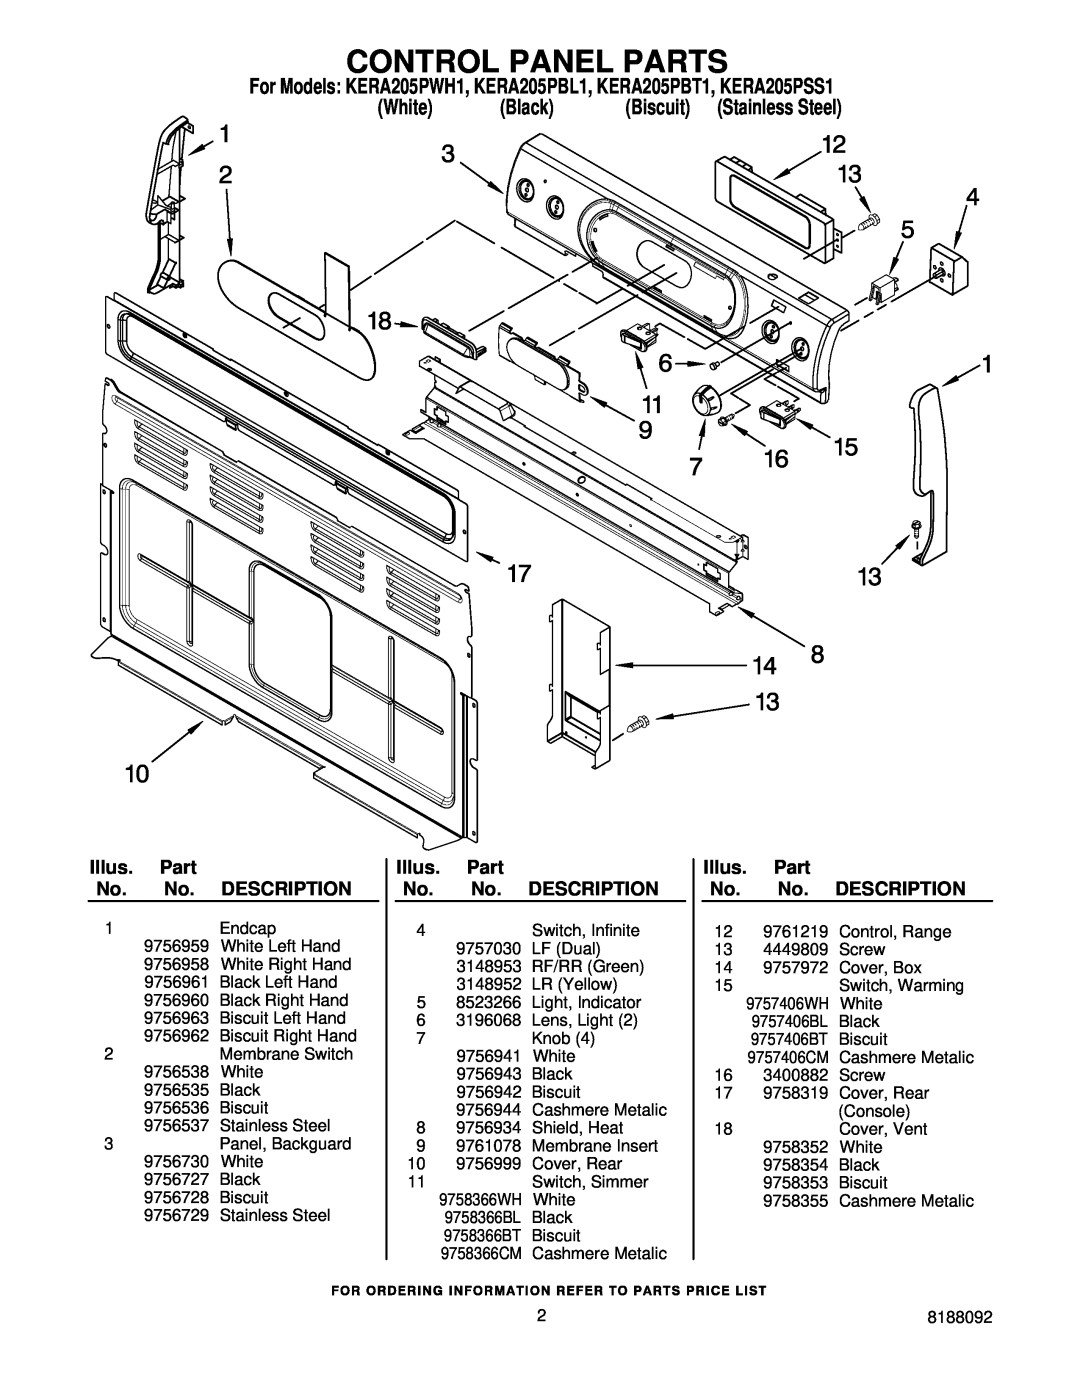 KitchenAid Control Panel Parts, For Models KERA205PWH1, KERA205PBL1, KERA205PBT1, KERA205PSS1, Black, Biscuit 